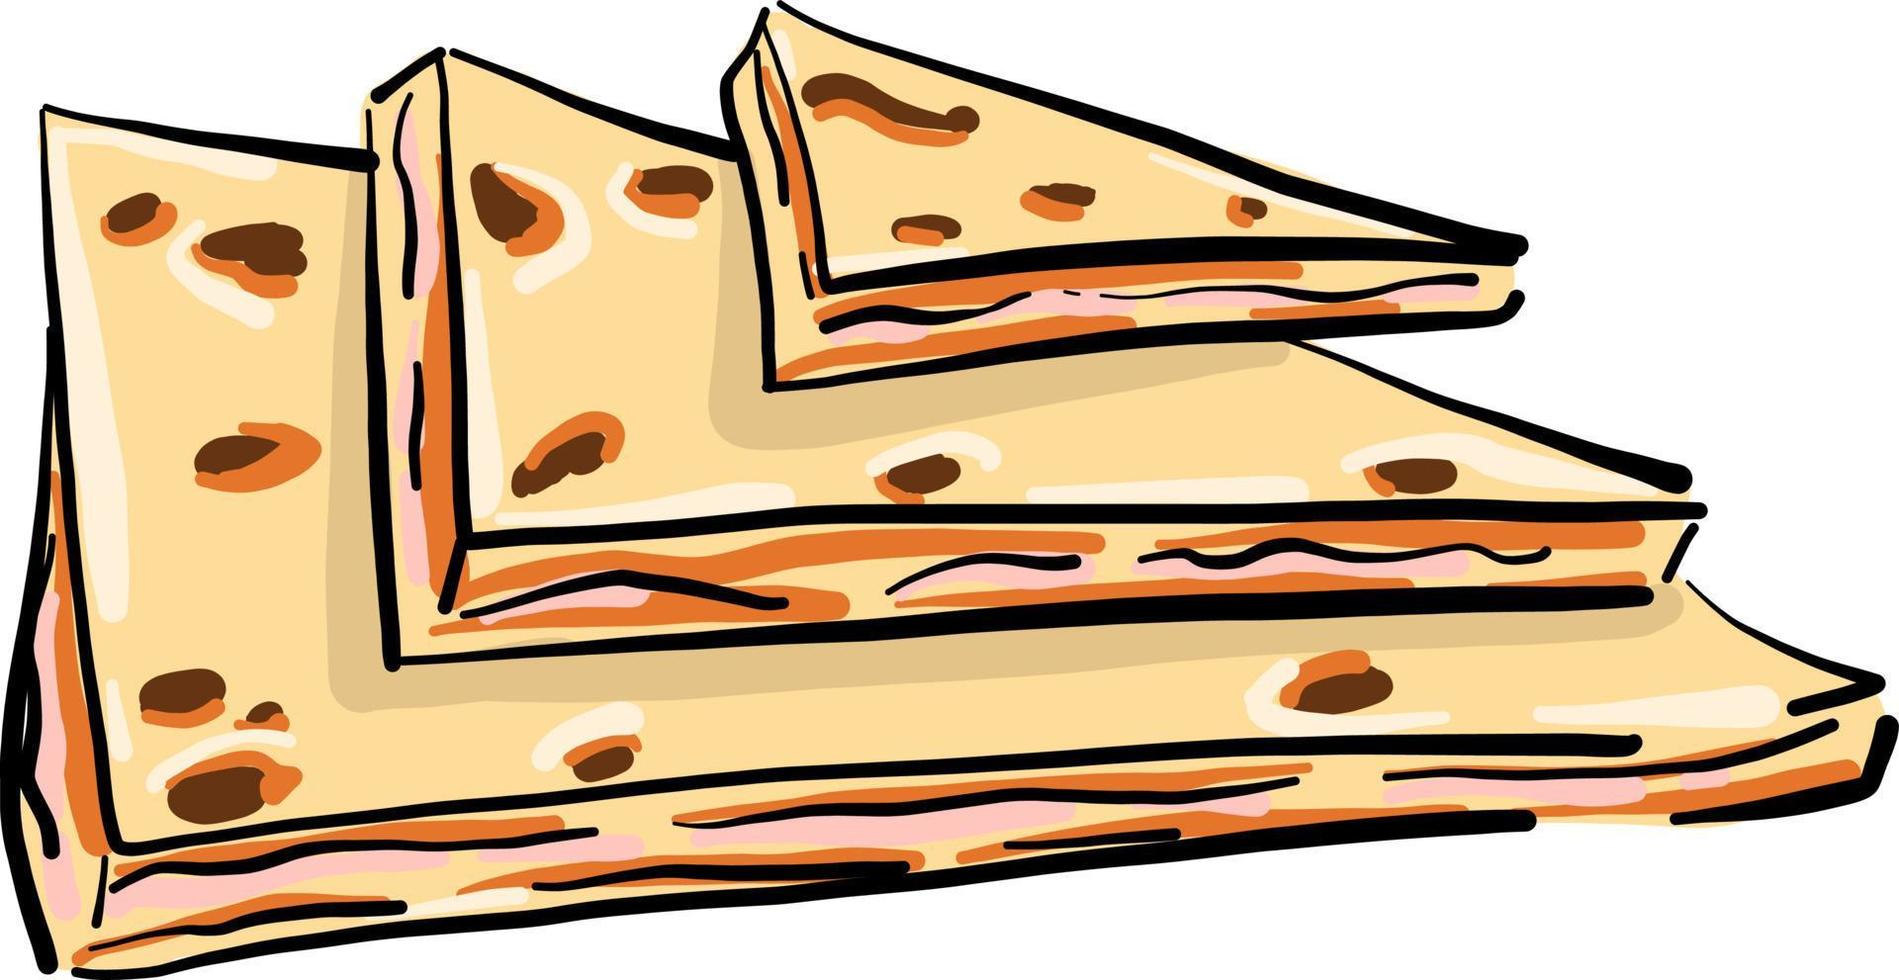 Gâteaux au fromage jambon, illustration, vecteur sur fond blanc